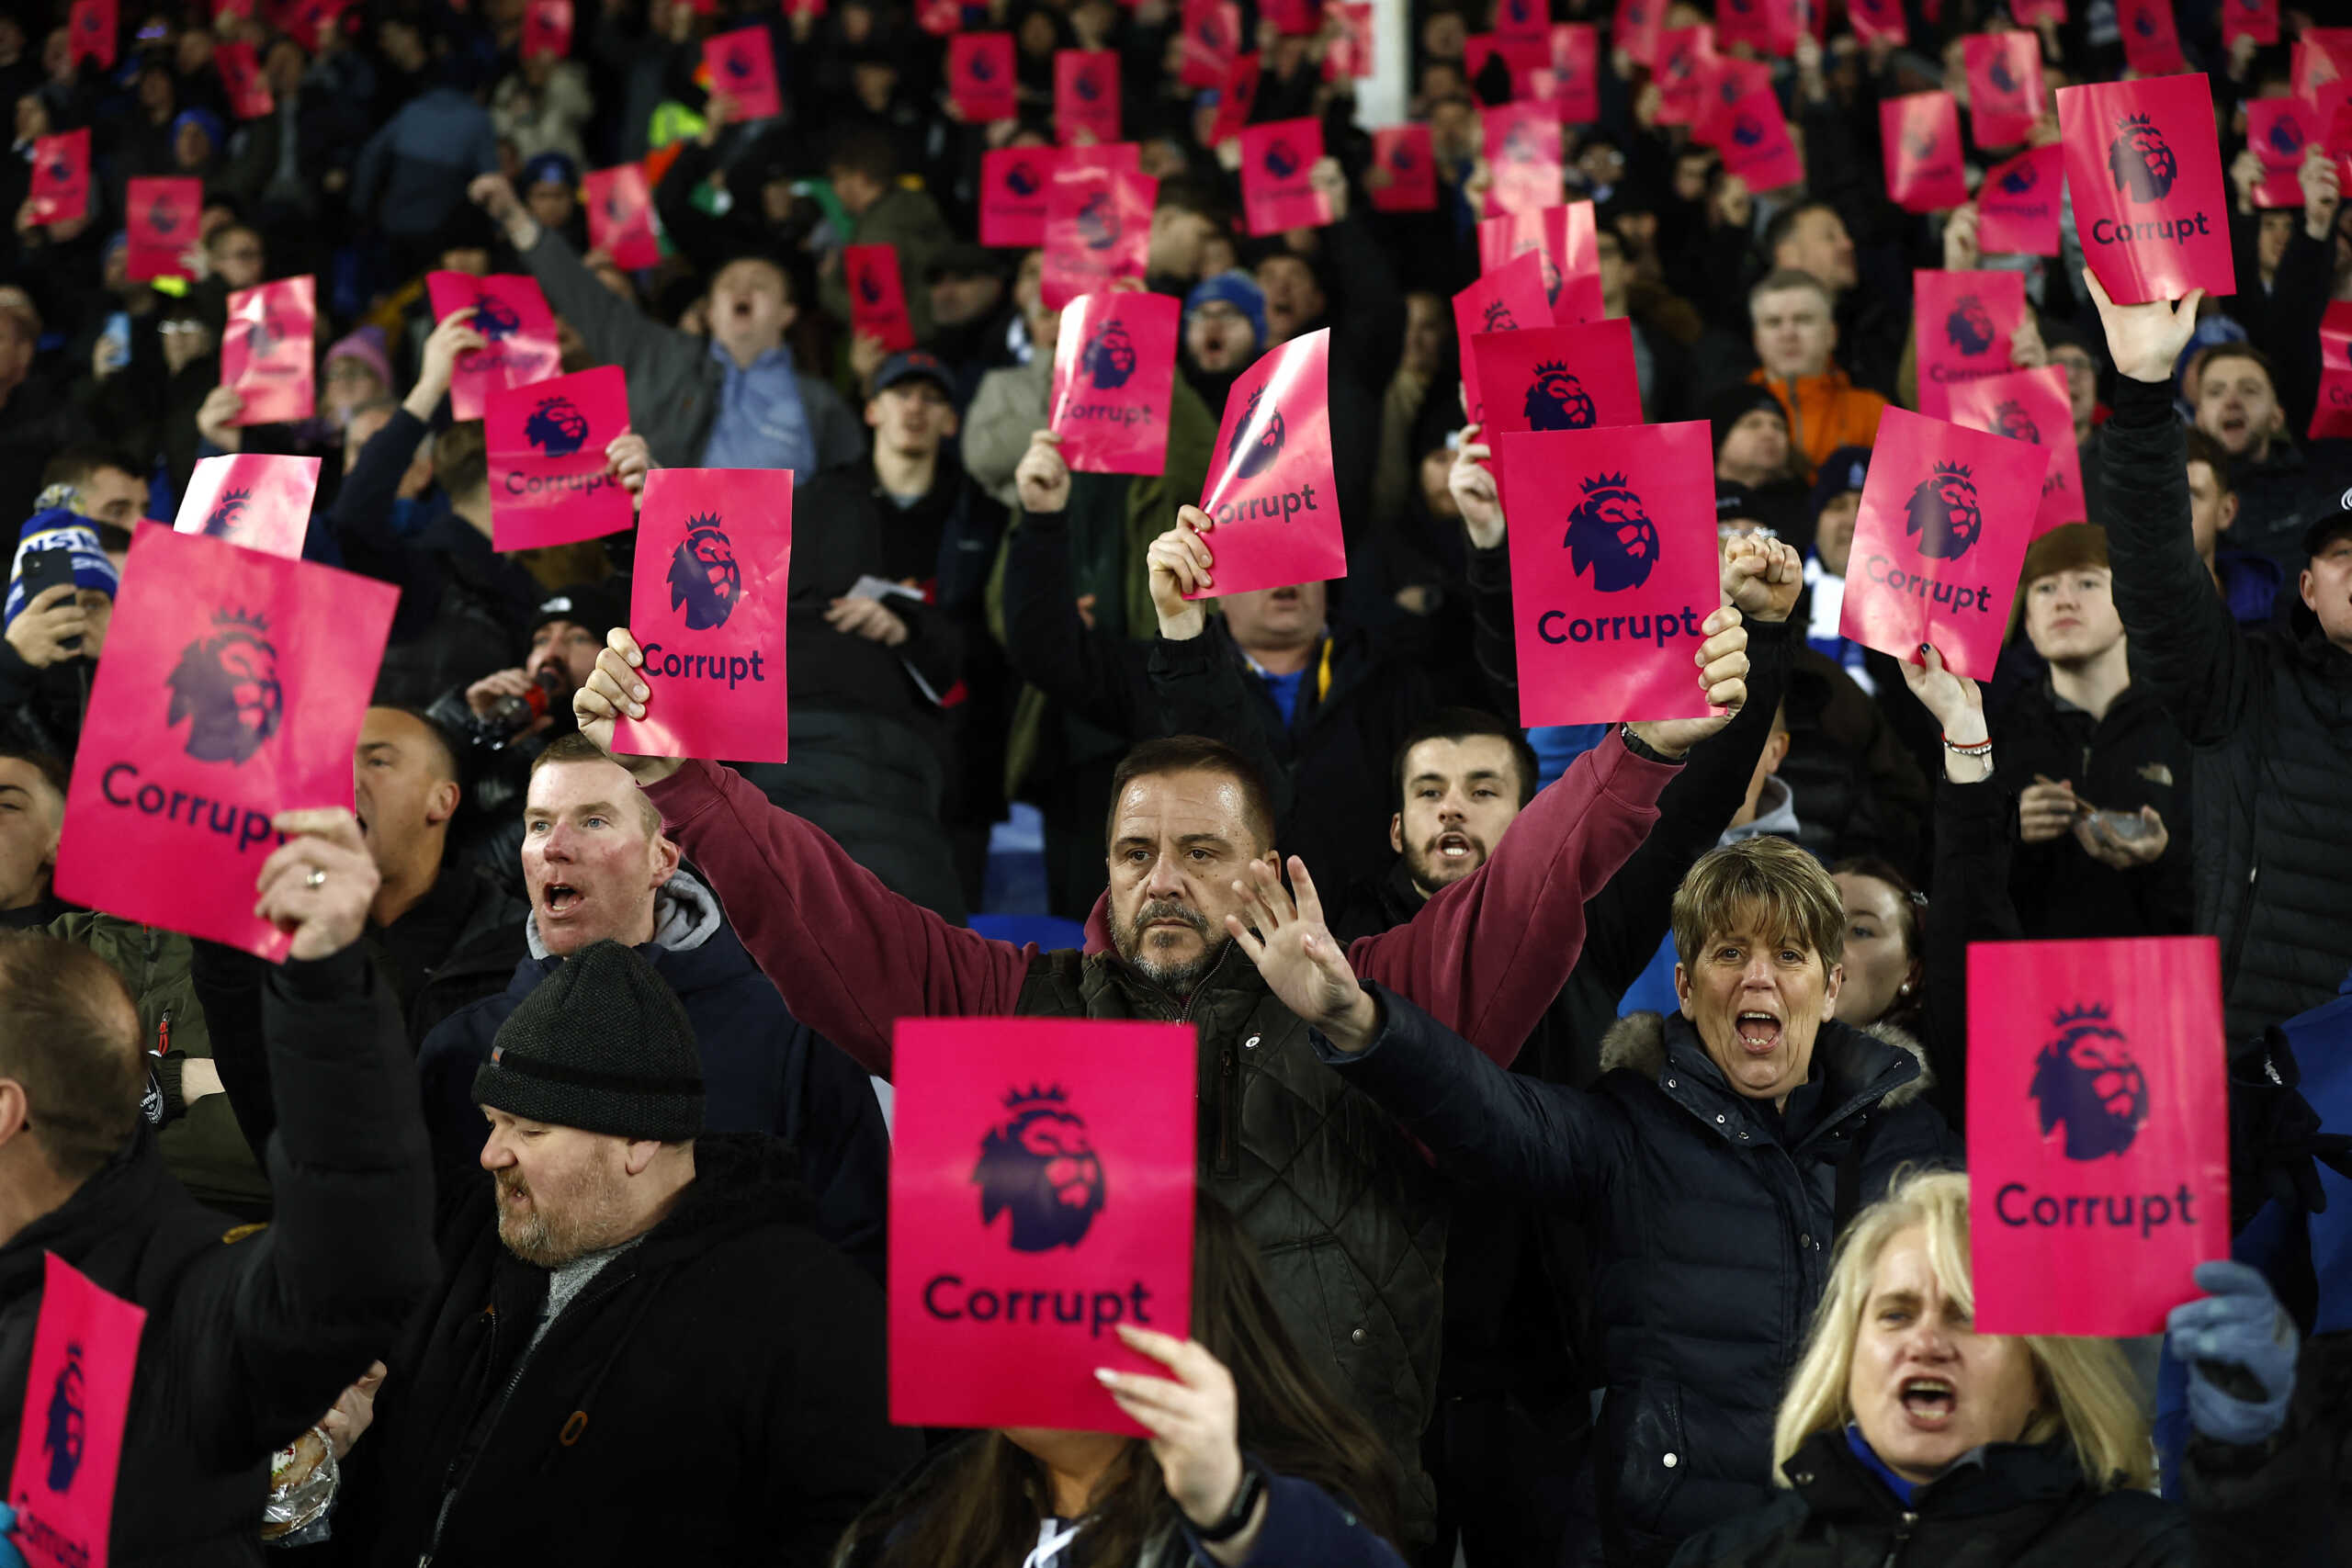 Έβερτον – Μάντσεστερ Γιουνάιτεντ: Σήκωσαν κάρτες στο «Γκούντισον Παρκ» κατηγορώντας την Premier League για διαφθορά